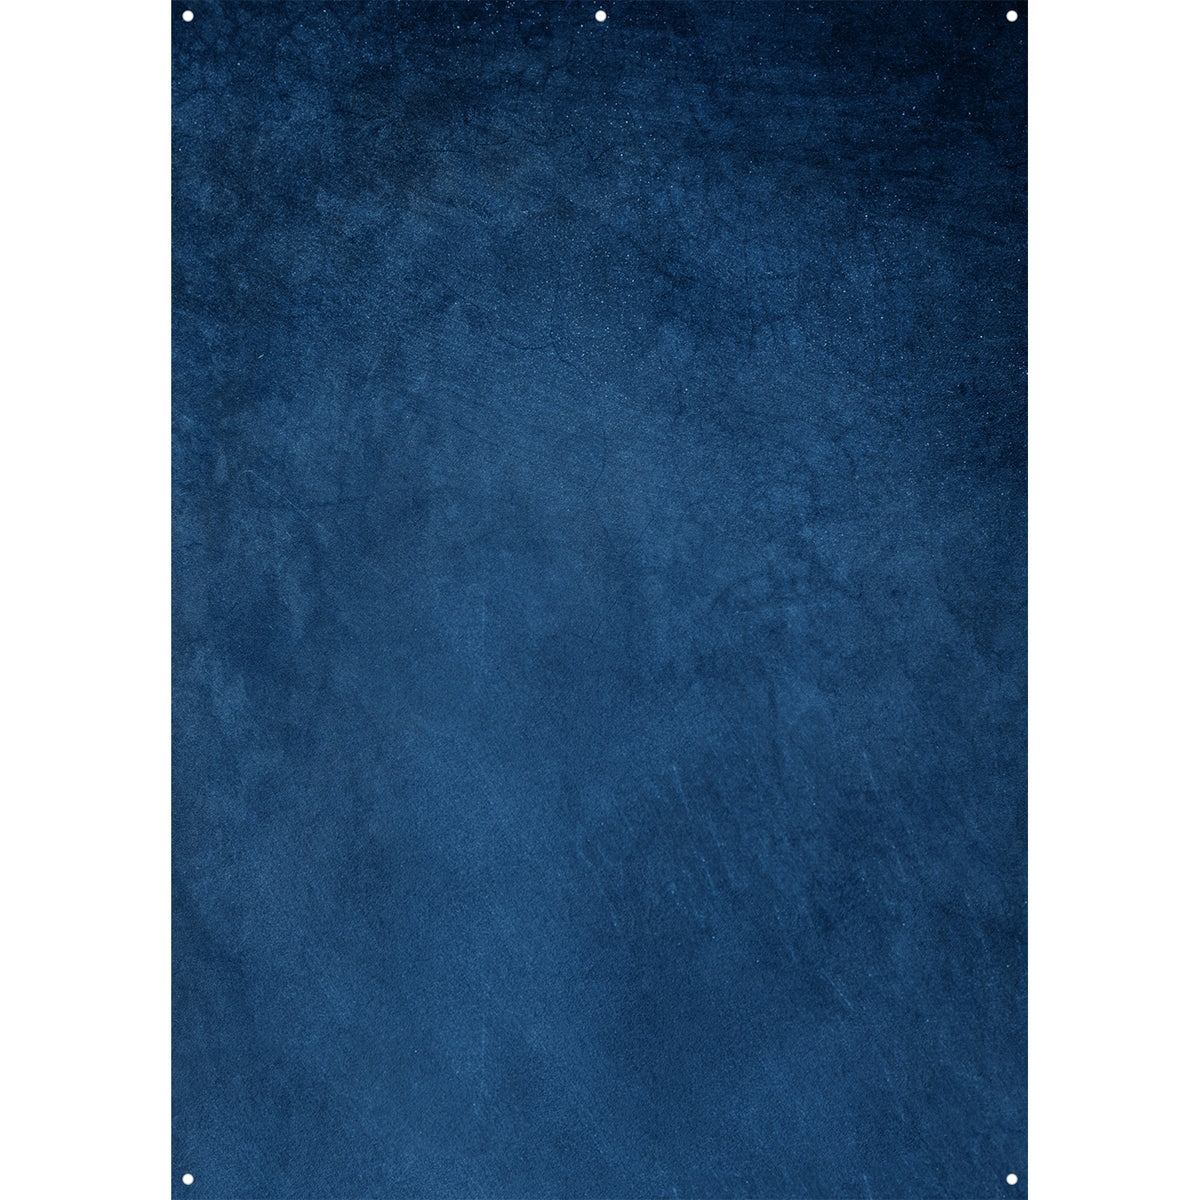 X-Drop Fabric Backdrop - Blue Concrete (5' x 7')